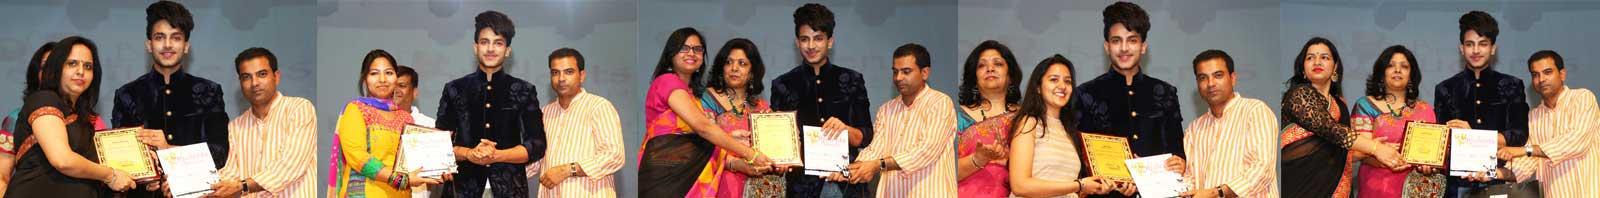 Urvi Jain, Ambika Mahajan, Anuradha Rathore, and Binoo Yadav Awarded Student of the Year 2015